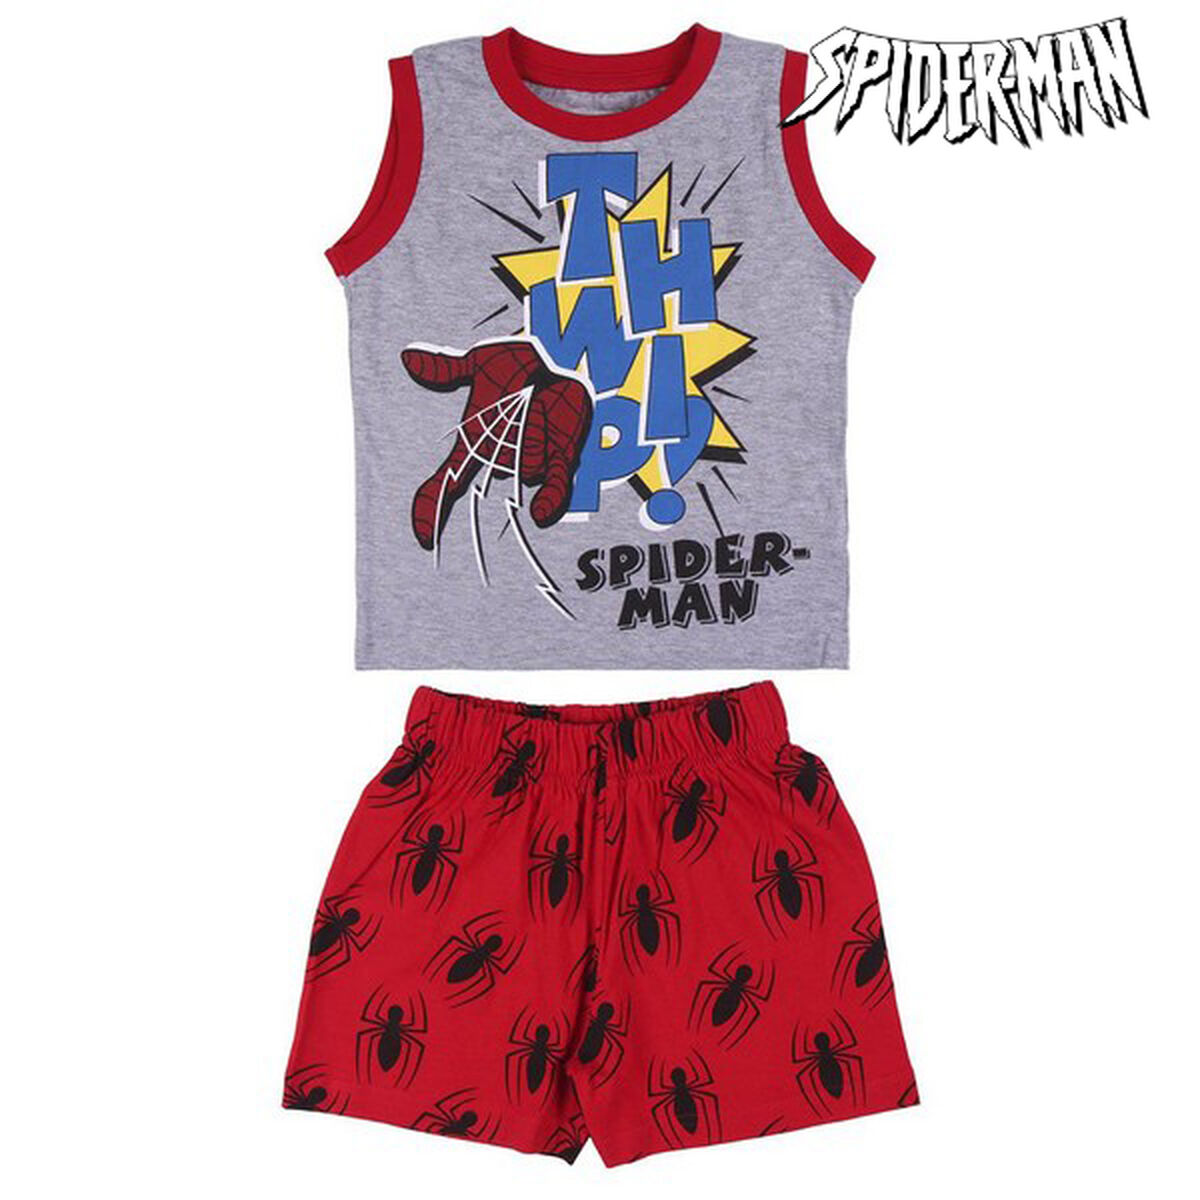 Osta tuote Pyjamat Lasten Spider-Man Harmaa (Koko: 2 vuotta) verkkokaupastamme Korhone: Lelut & Asut 10% alennuksella koodilla KORHONE